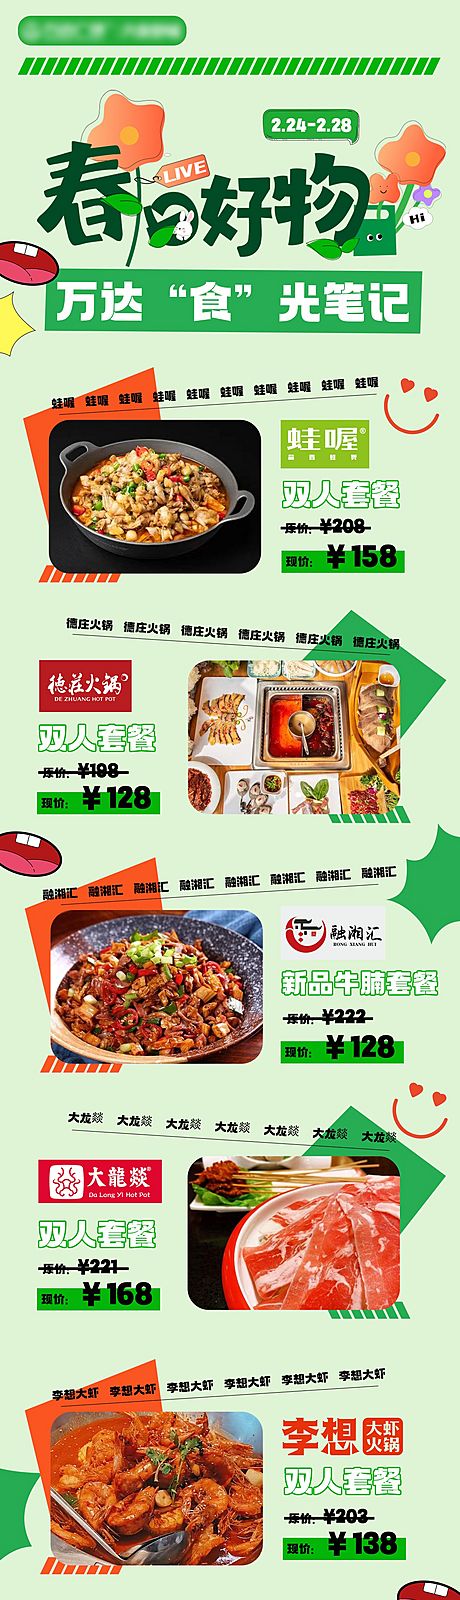 仙图网-餐饮美食海报